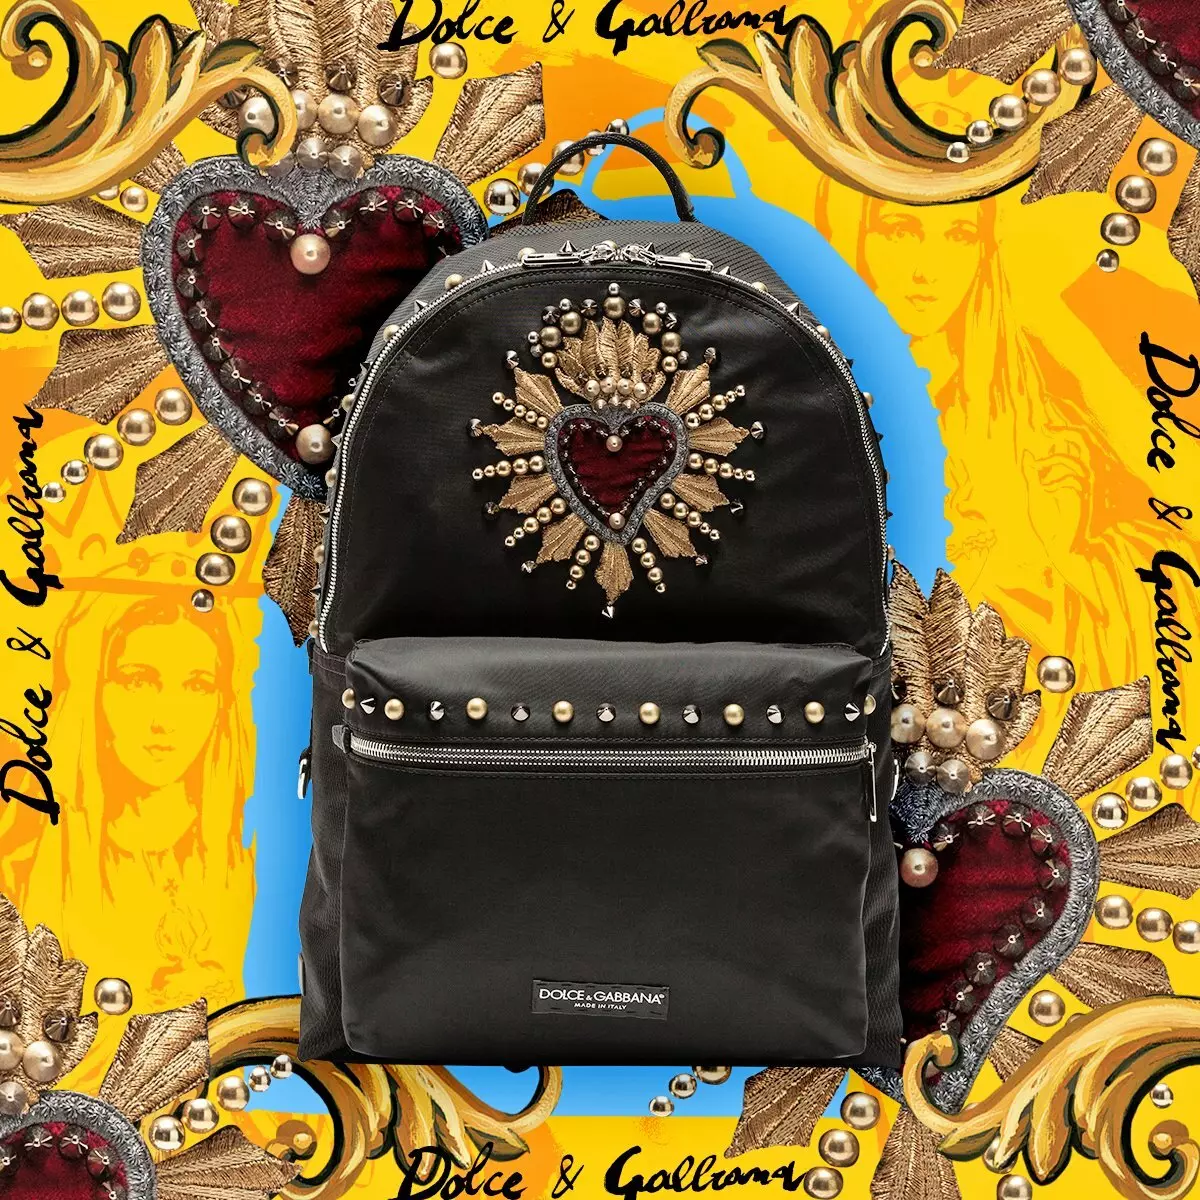 DOLCE & Gabbana Backpacks: ເພດຍິງແລະຜູ້ຊາຍ, ສີດໍາແລະສີແດງແລະສີແດງ, ກະເປົາເປ້ແລະແບບອື່ນໆ. ວິທີການຈໍາແນກຕົ້ນສະບັບຈາກສໍາເນົາ? 2559_12